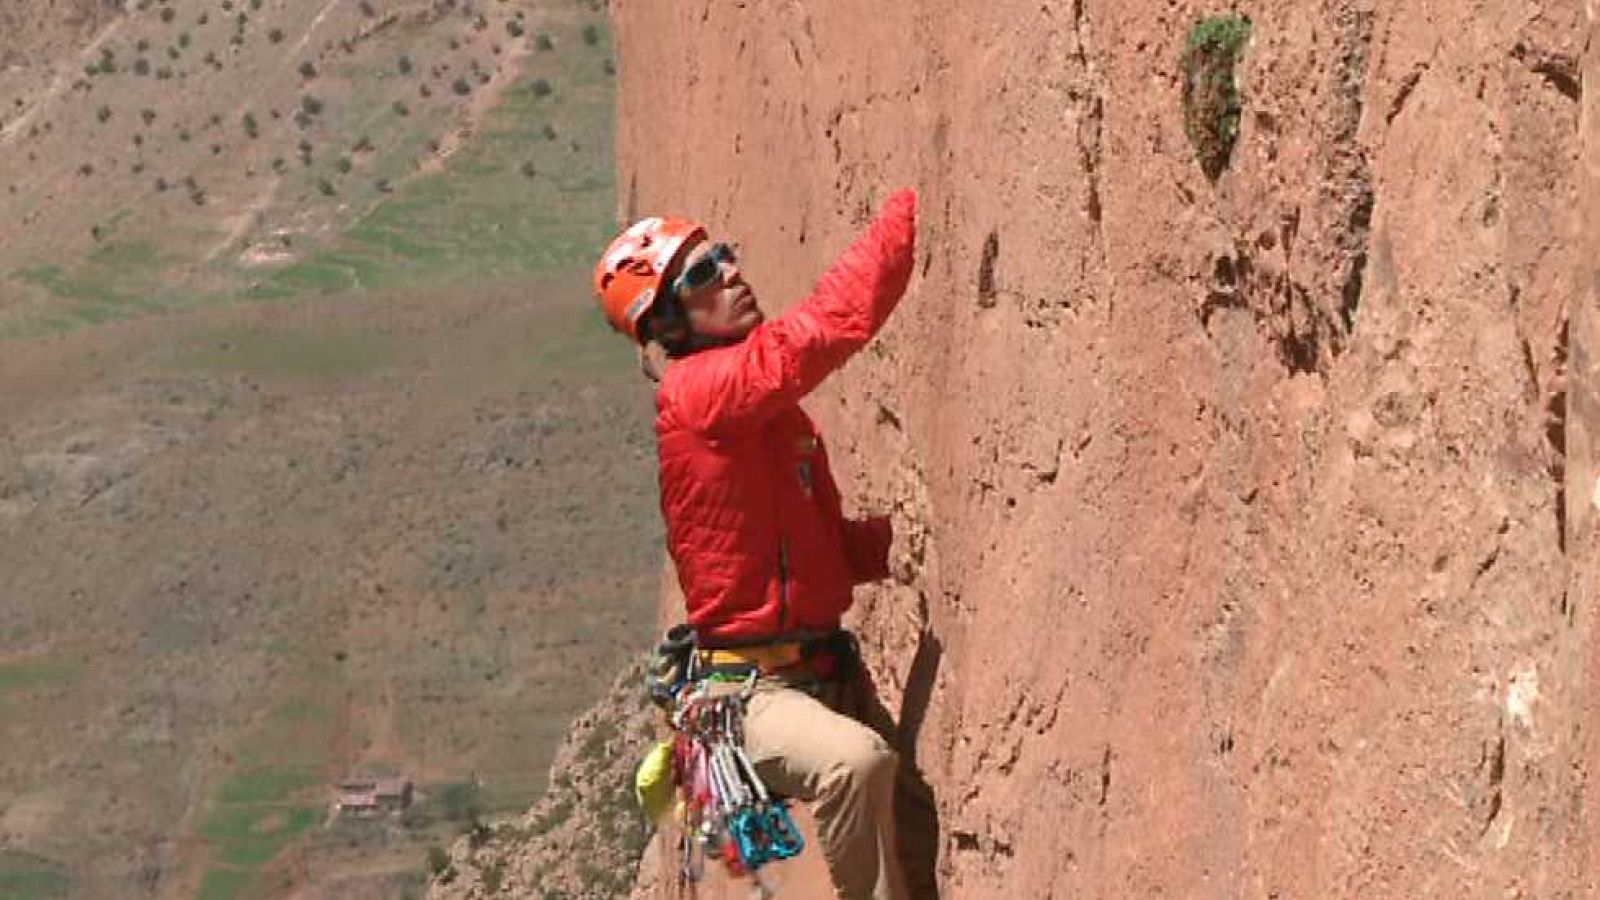 Al filo de lo imposible - En la tierra de los bereberes: escalada en roca